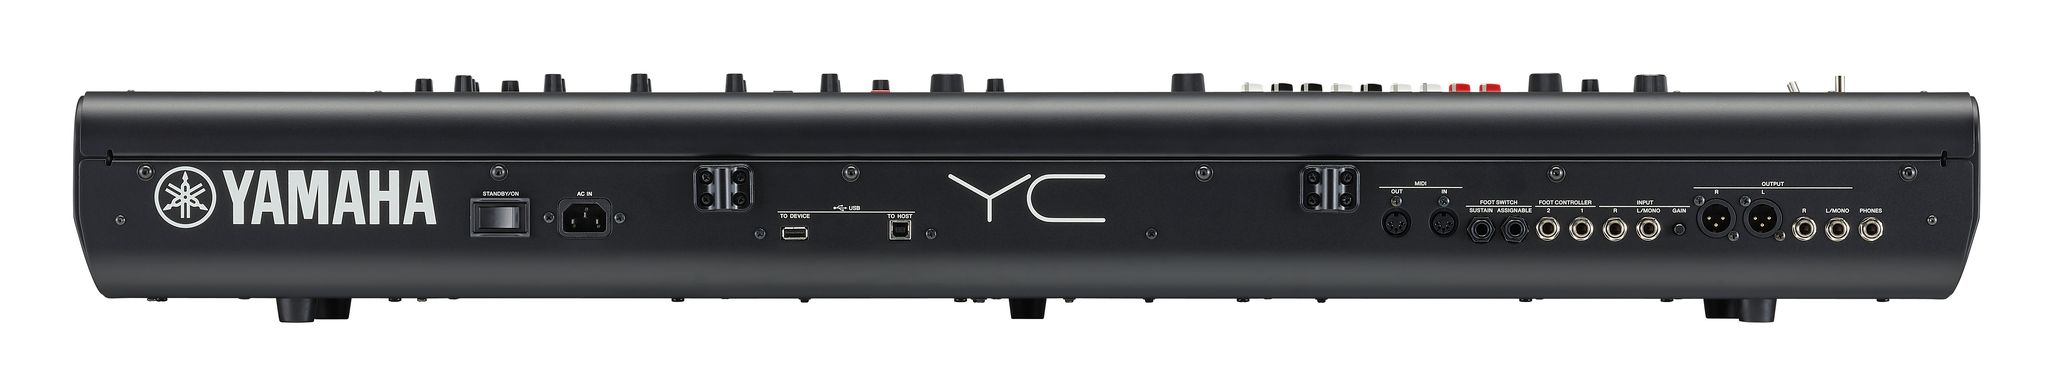 Yamaha Yc 73 - Teclado de escenario - Variation 2